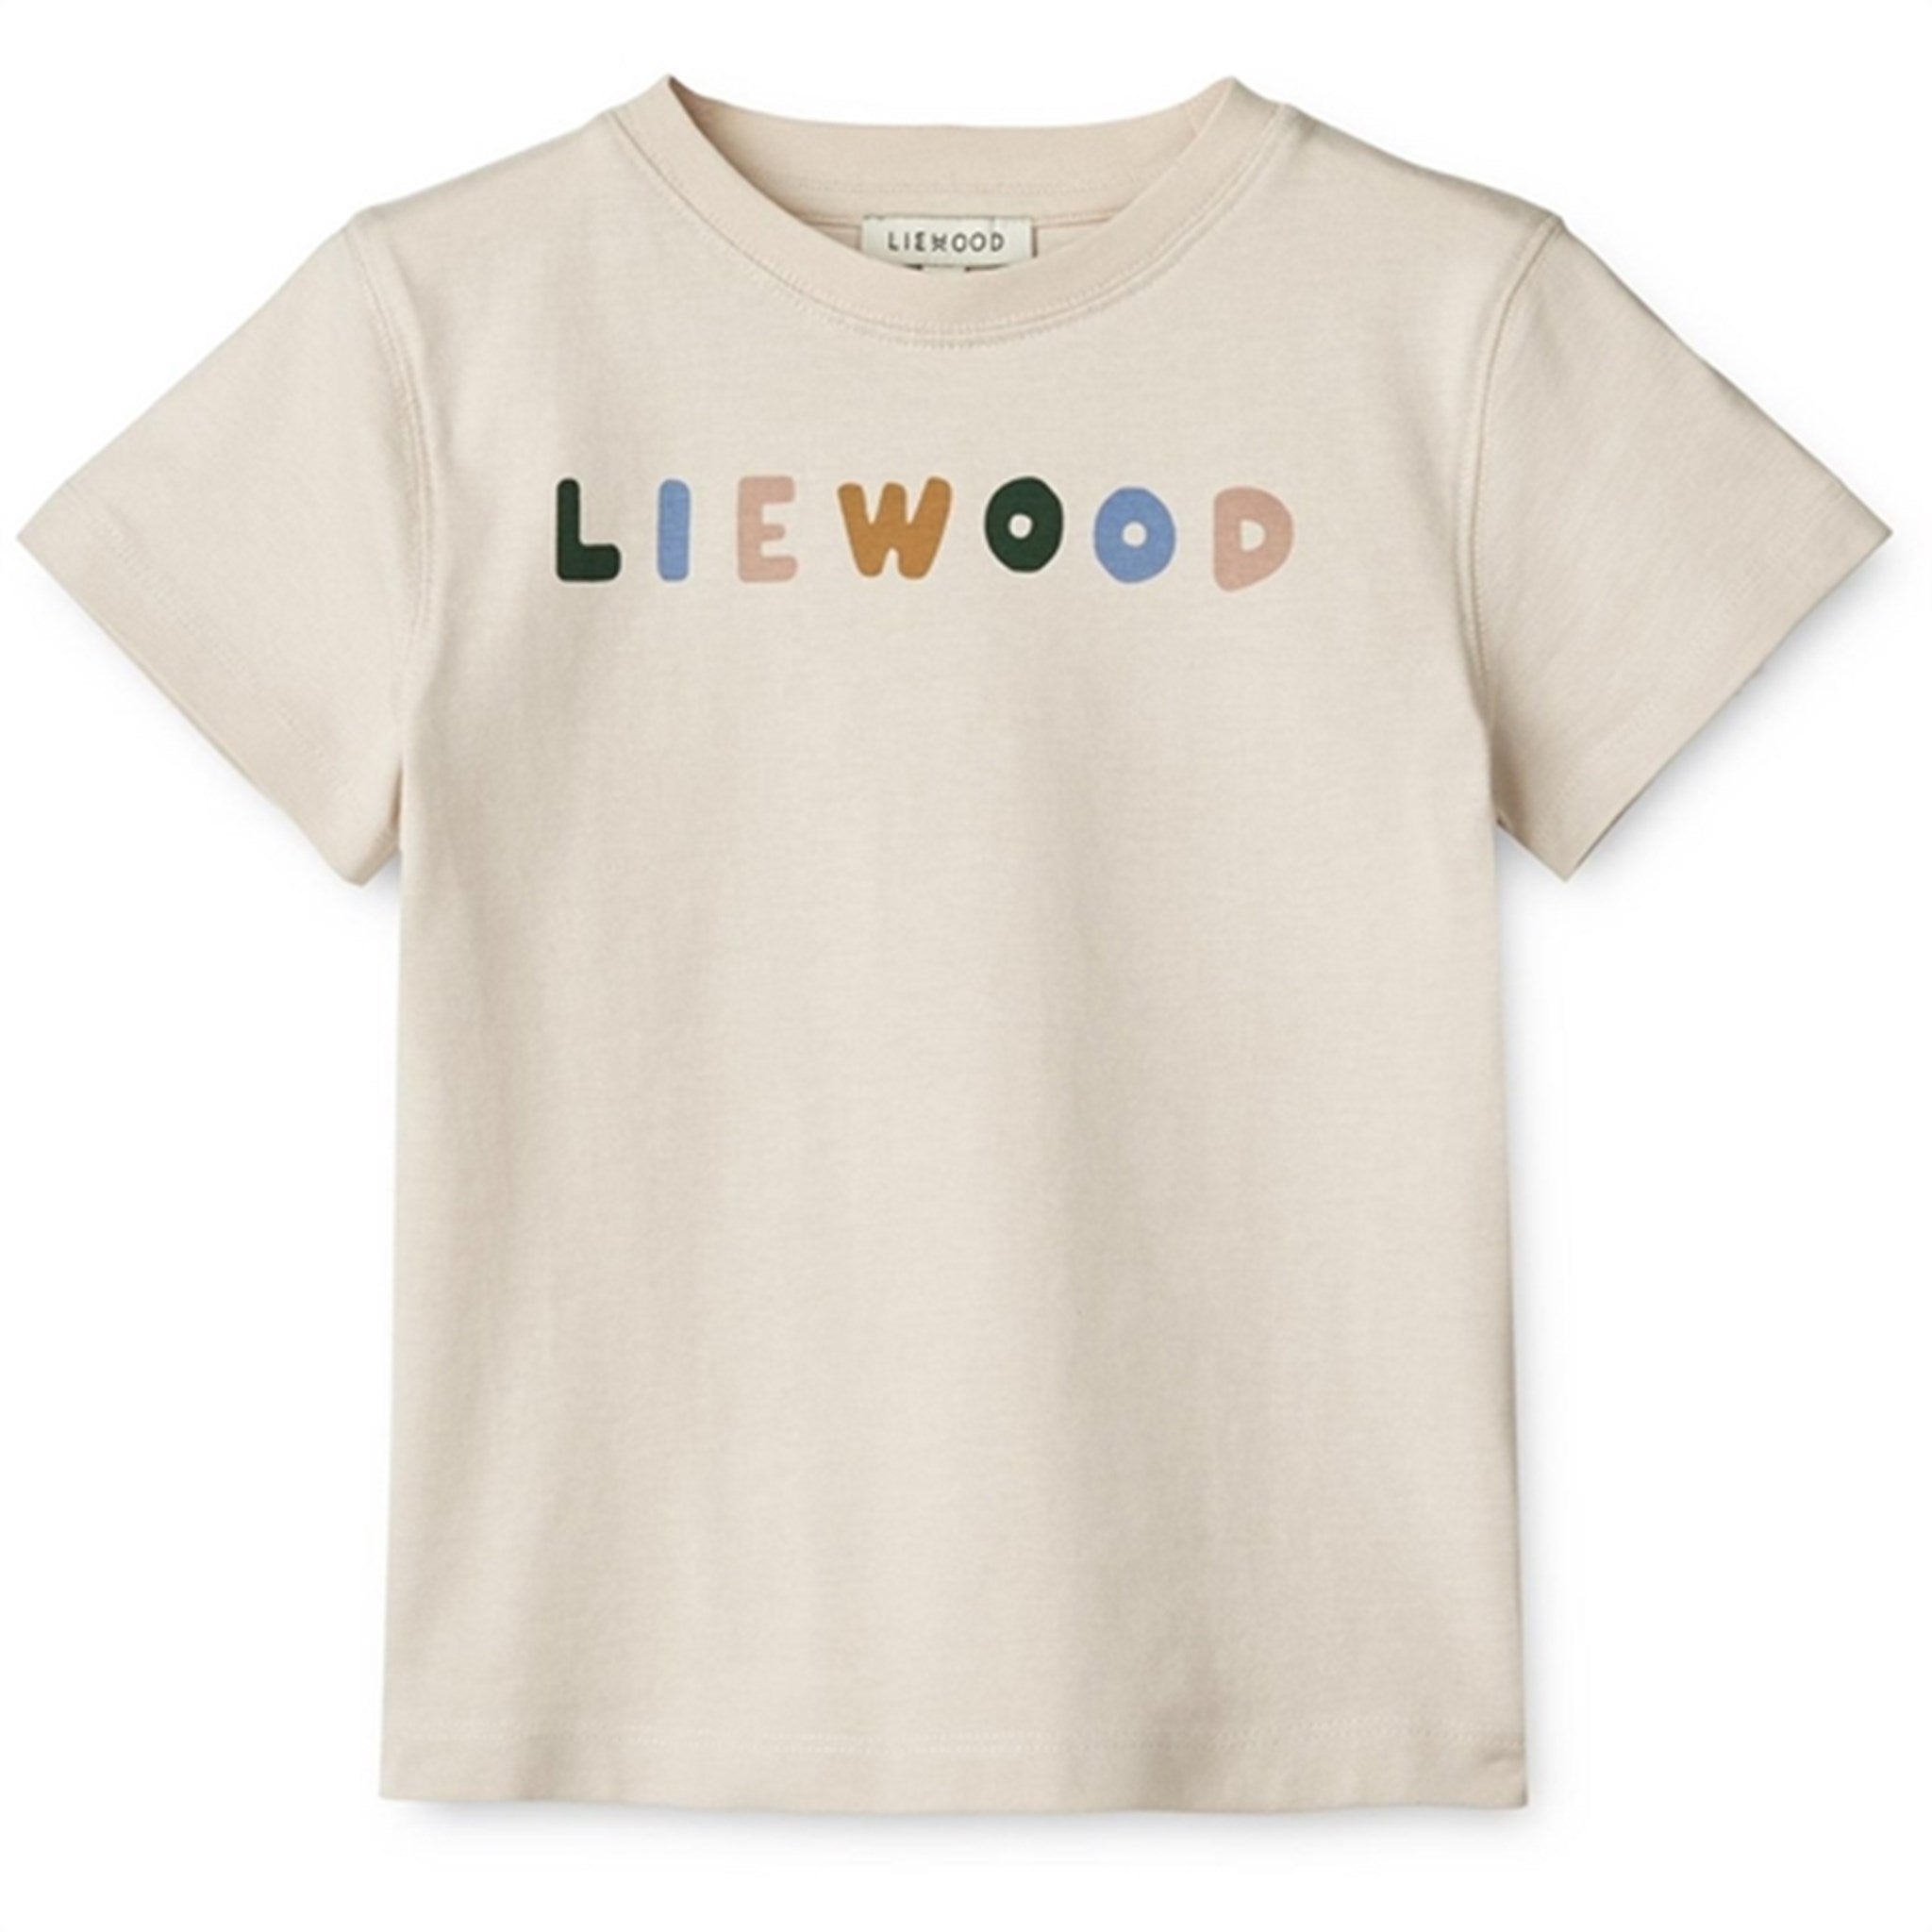 Liewood Liewood/Sandy Sixten Placement T-shirt